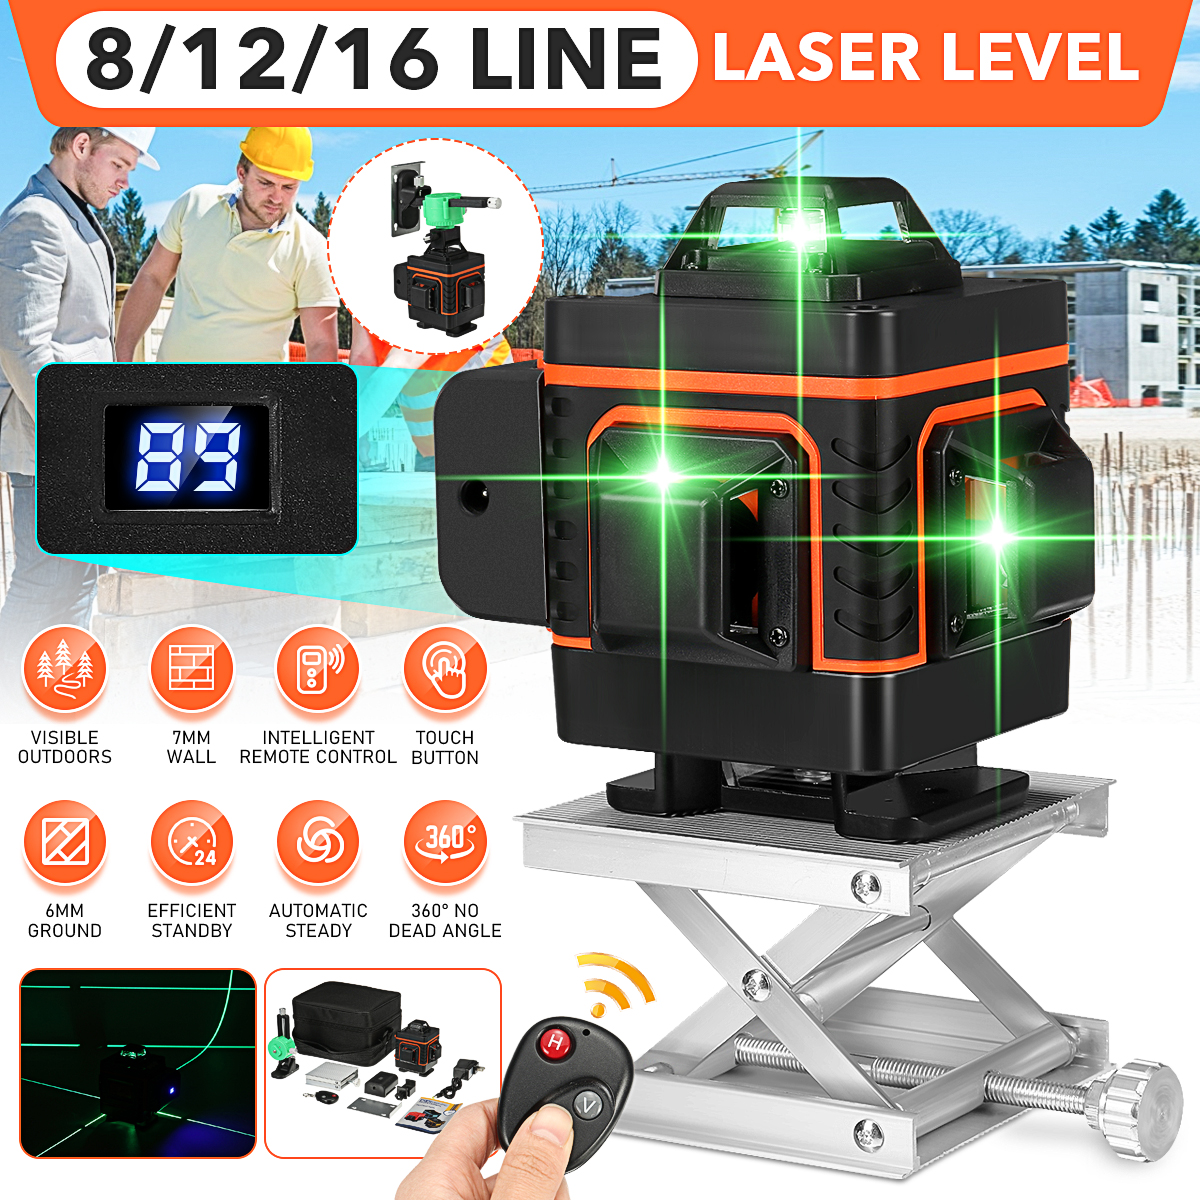 81216-Line-Digital-Laser-Level-Green-Light-Self-Leveling-360deg-Rotary-1888549-1